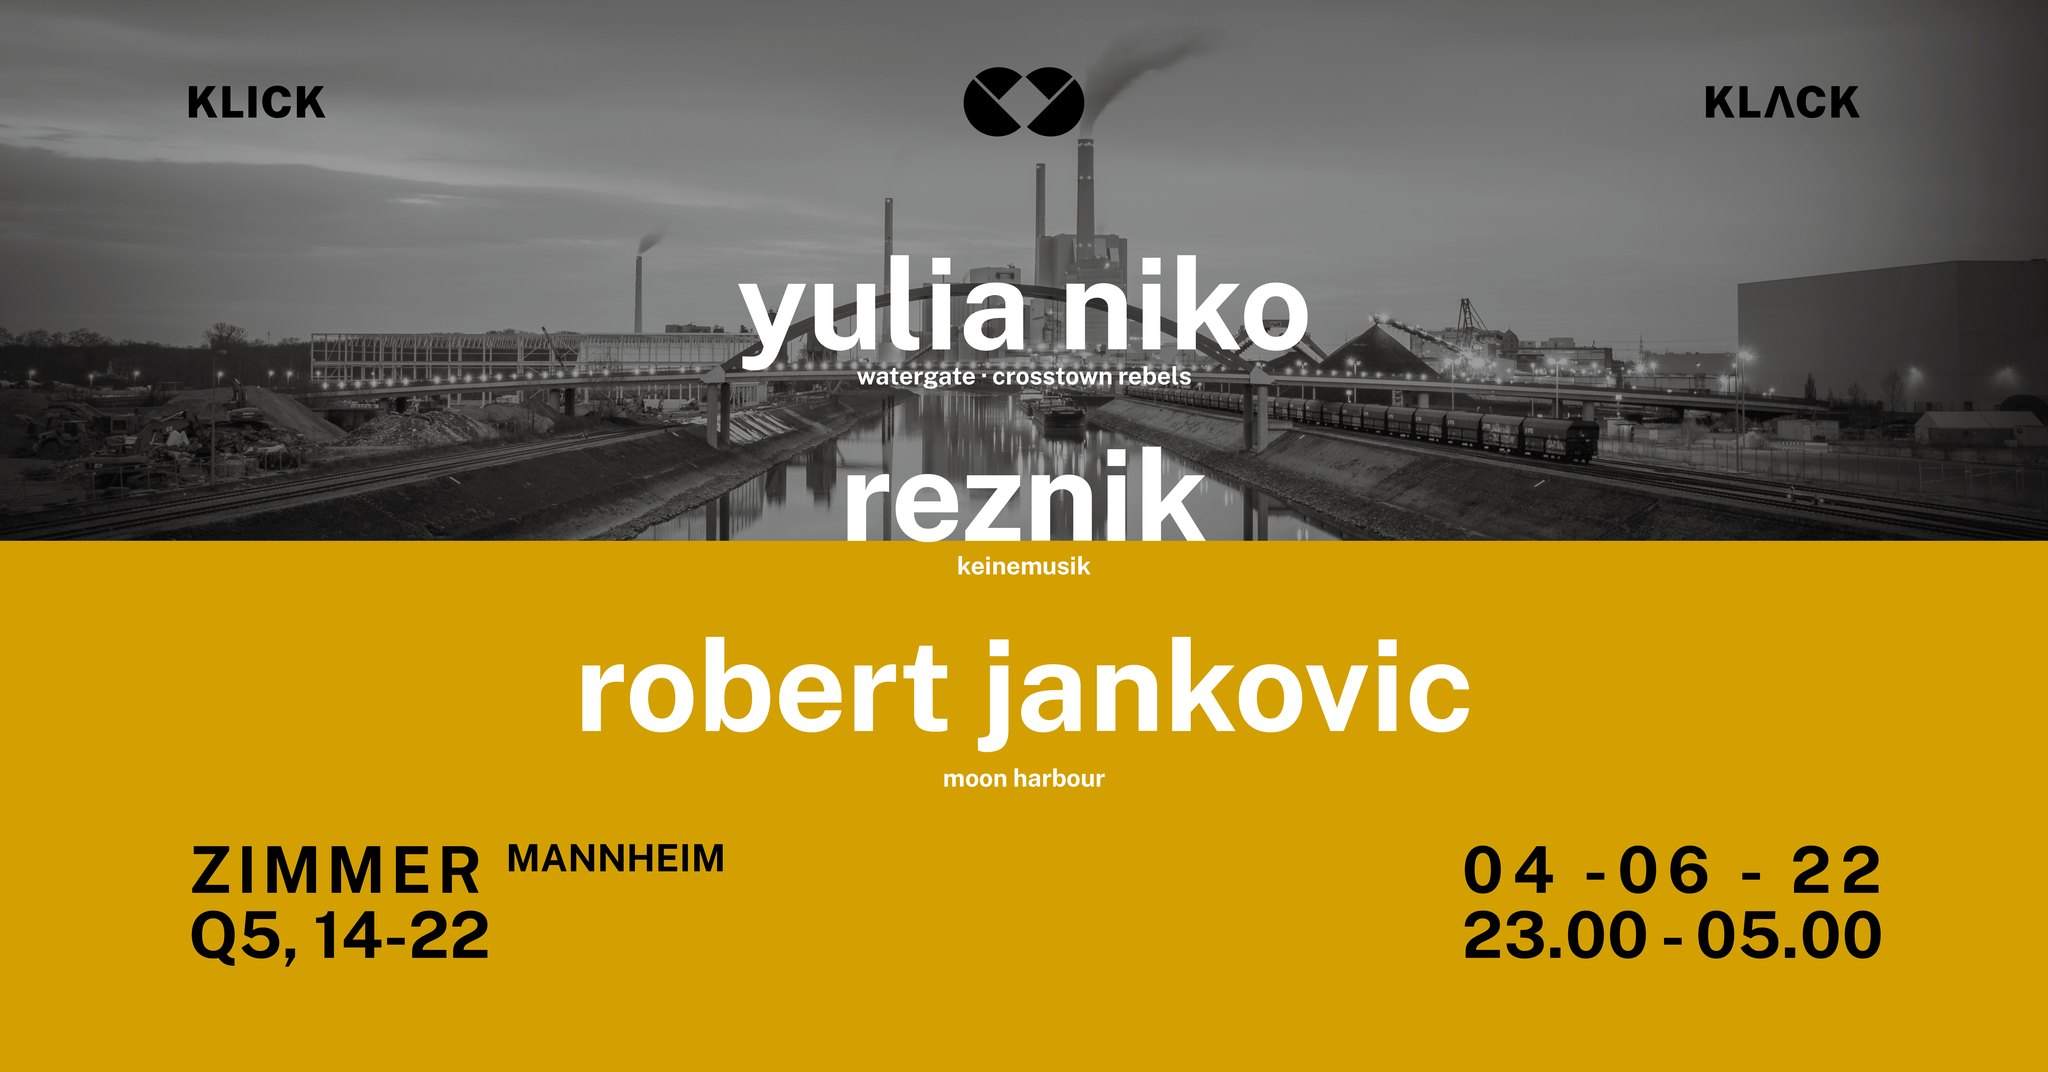 Klick Klack - Yulia Niko, Reznik, Robert Jankovic - フライヤー表